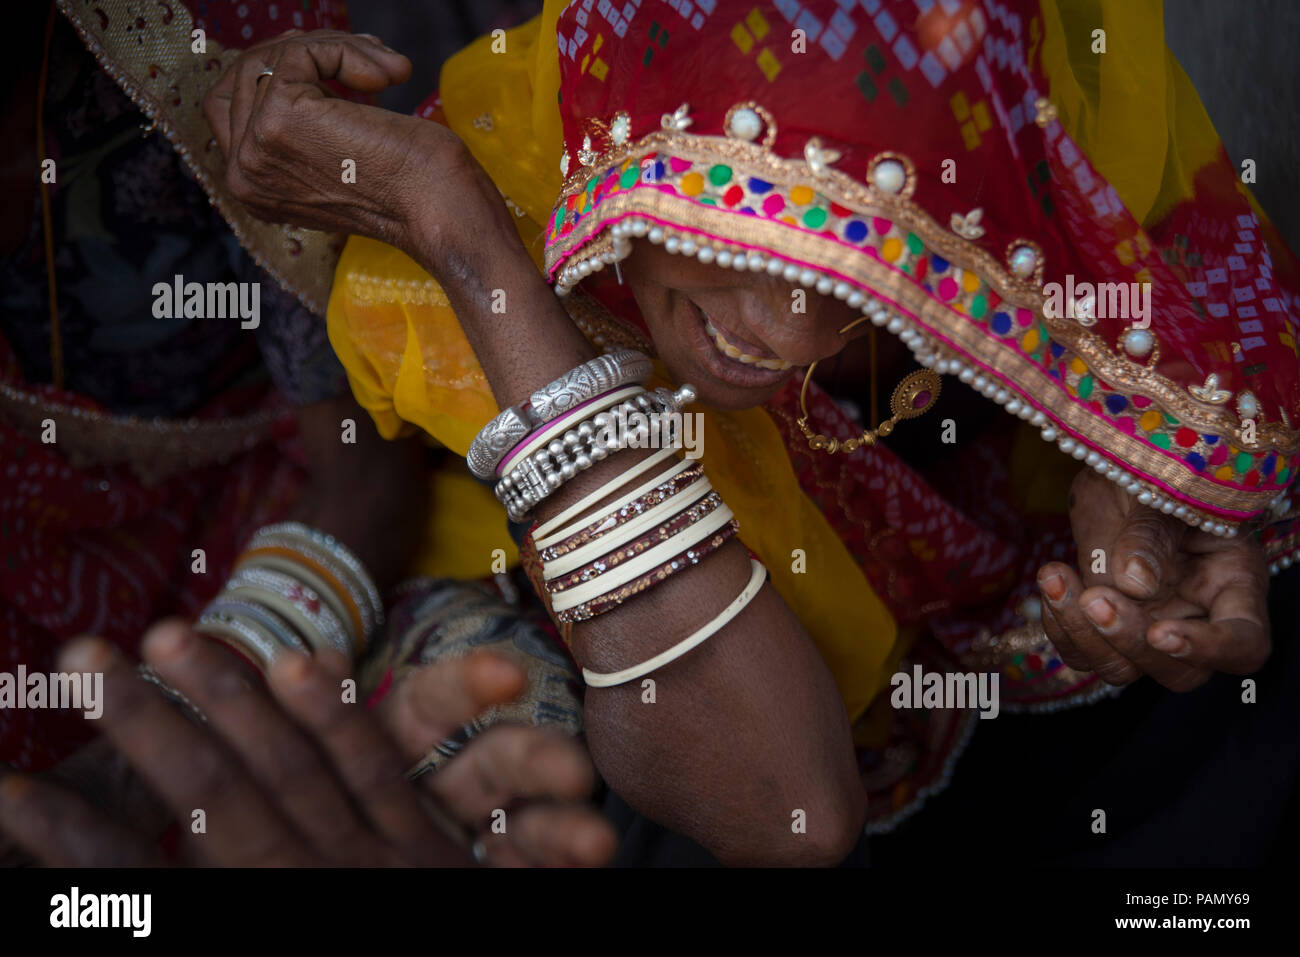 Donna indiana sorridente, indossando un dorato anello di naso, un rosso e senape foulard ricamati e molti braccialetti. 4 mani nel telaio. Foto Stock